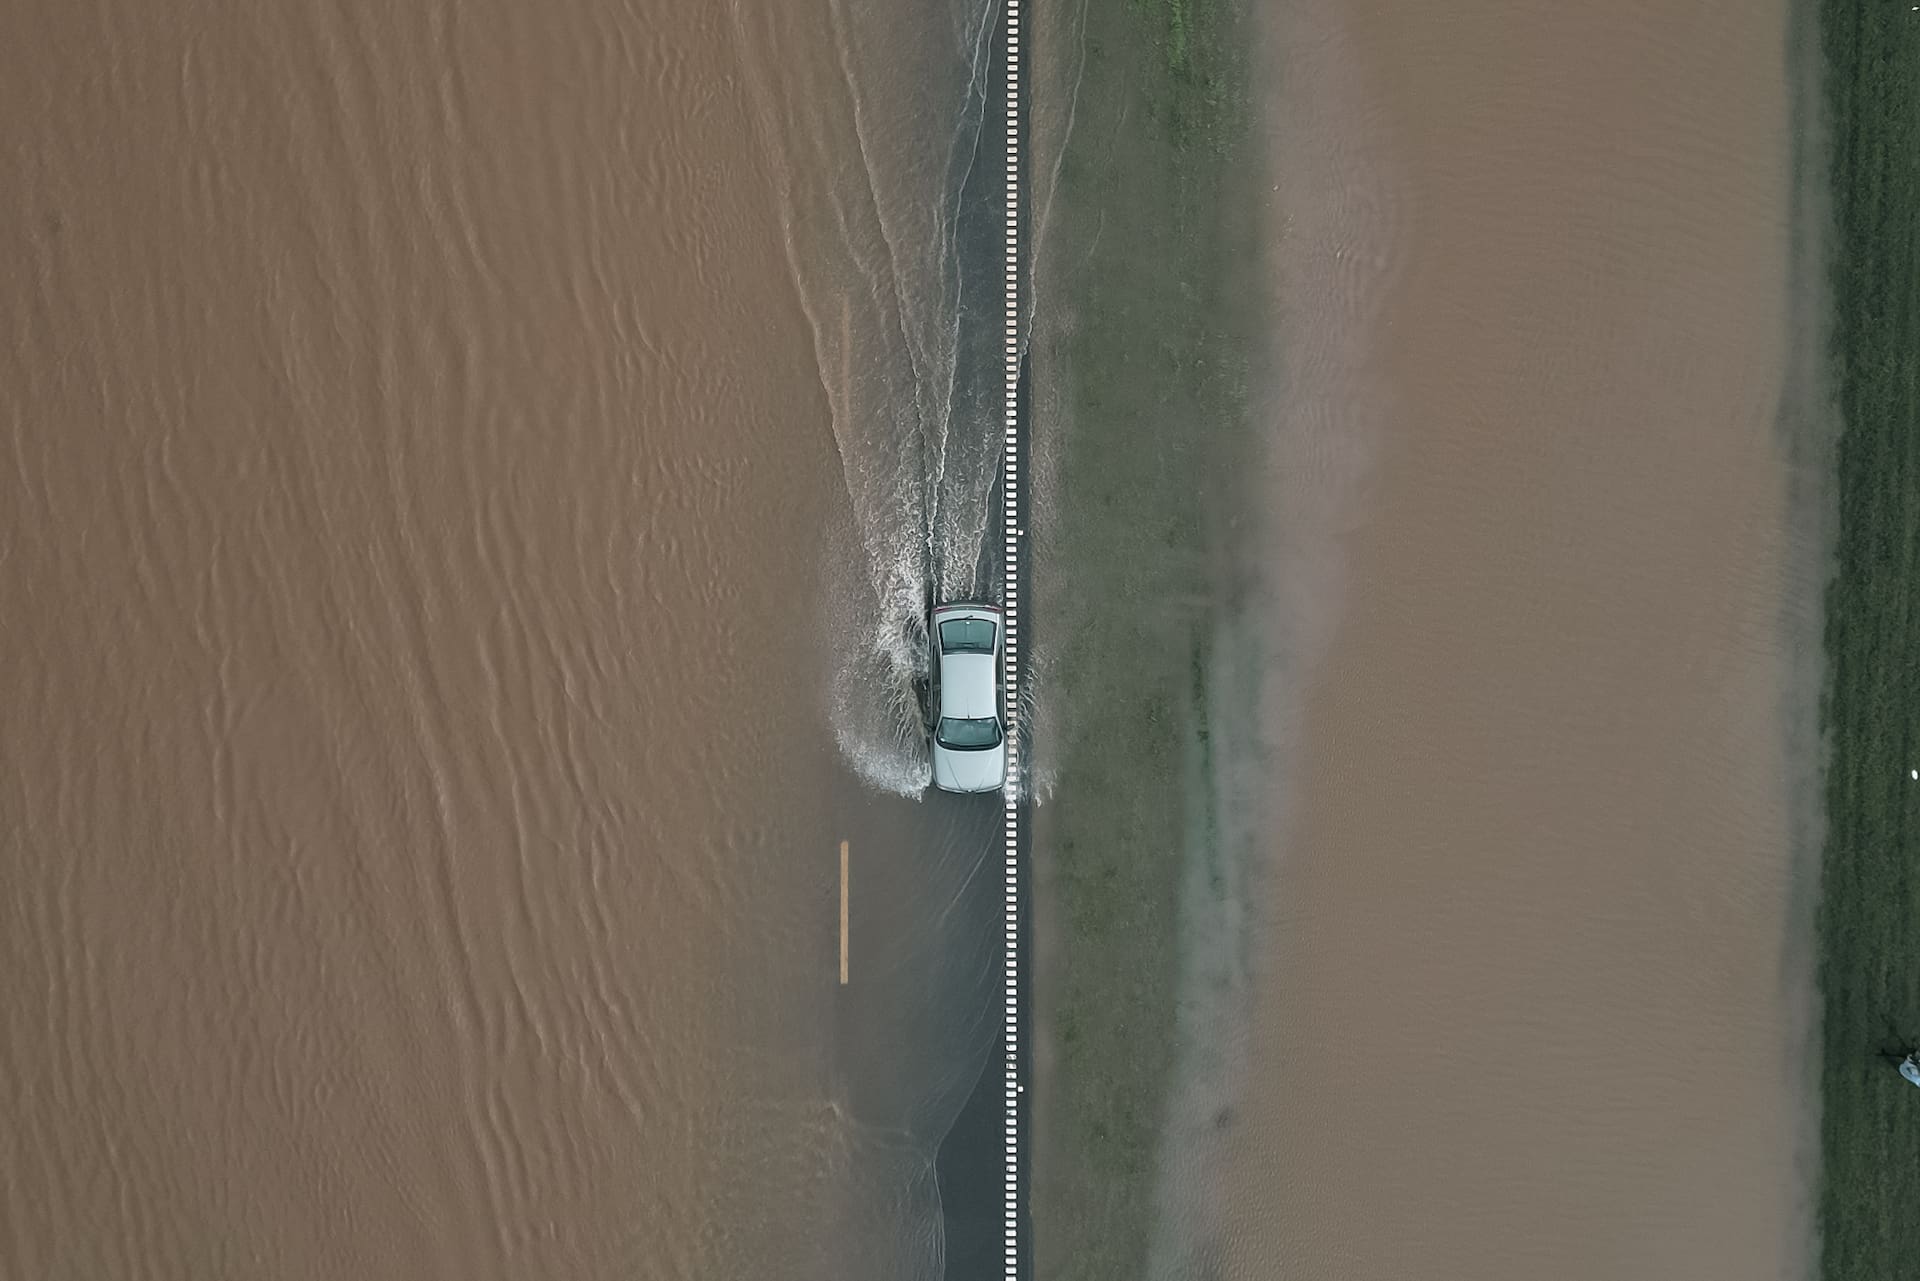 Fotografía aérea que muestra un vehículo que transita por una carretera inundada este miércoles en San Nicolás de los Arroyos, en la provincia de Buenos AiresJuan Ignacio Roncoroni - EFE